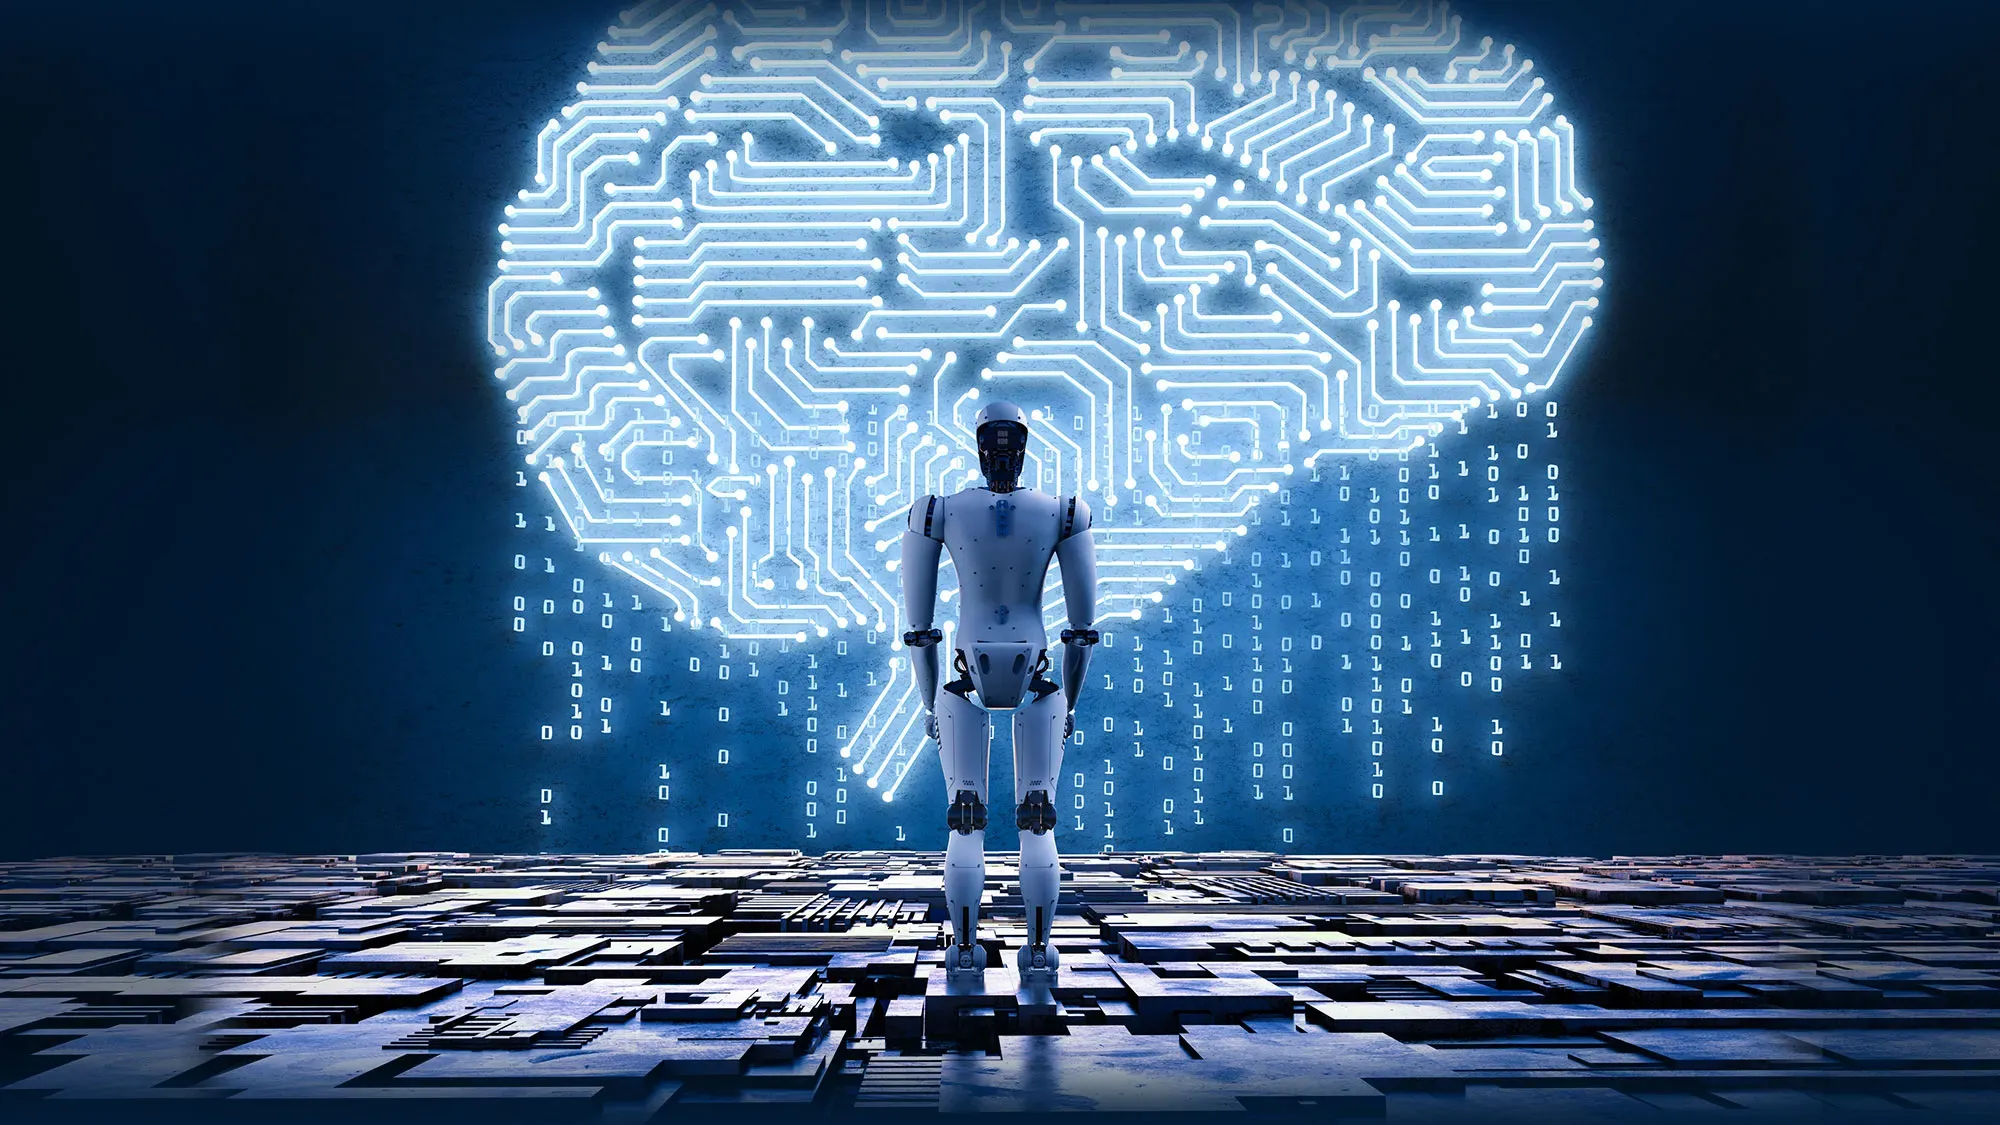 Enter a Brain for Autonomous Machines